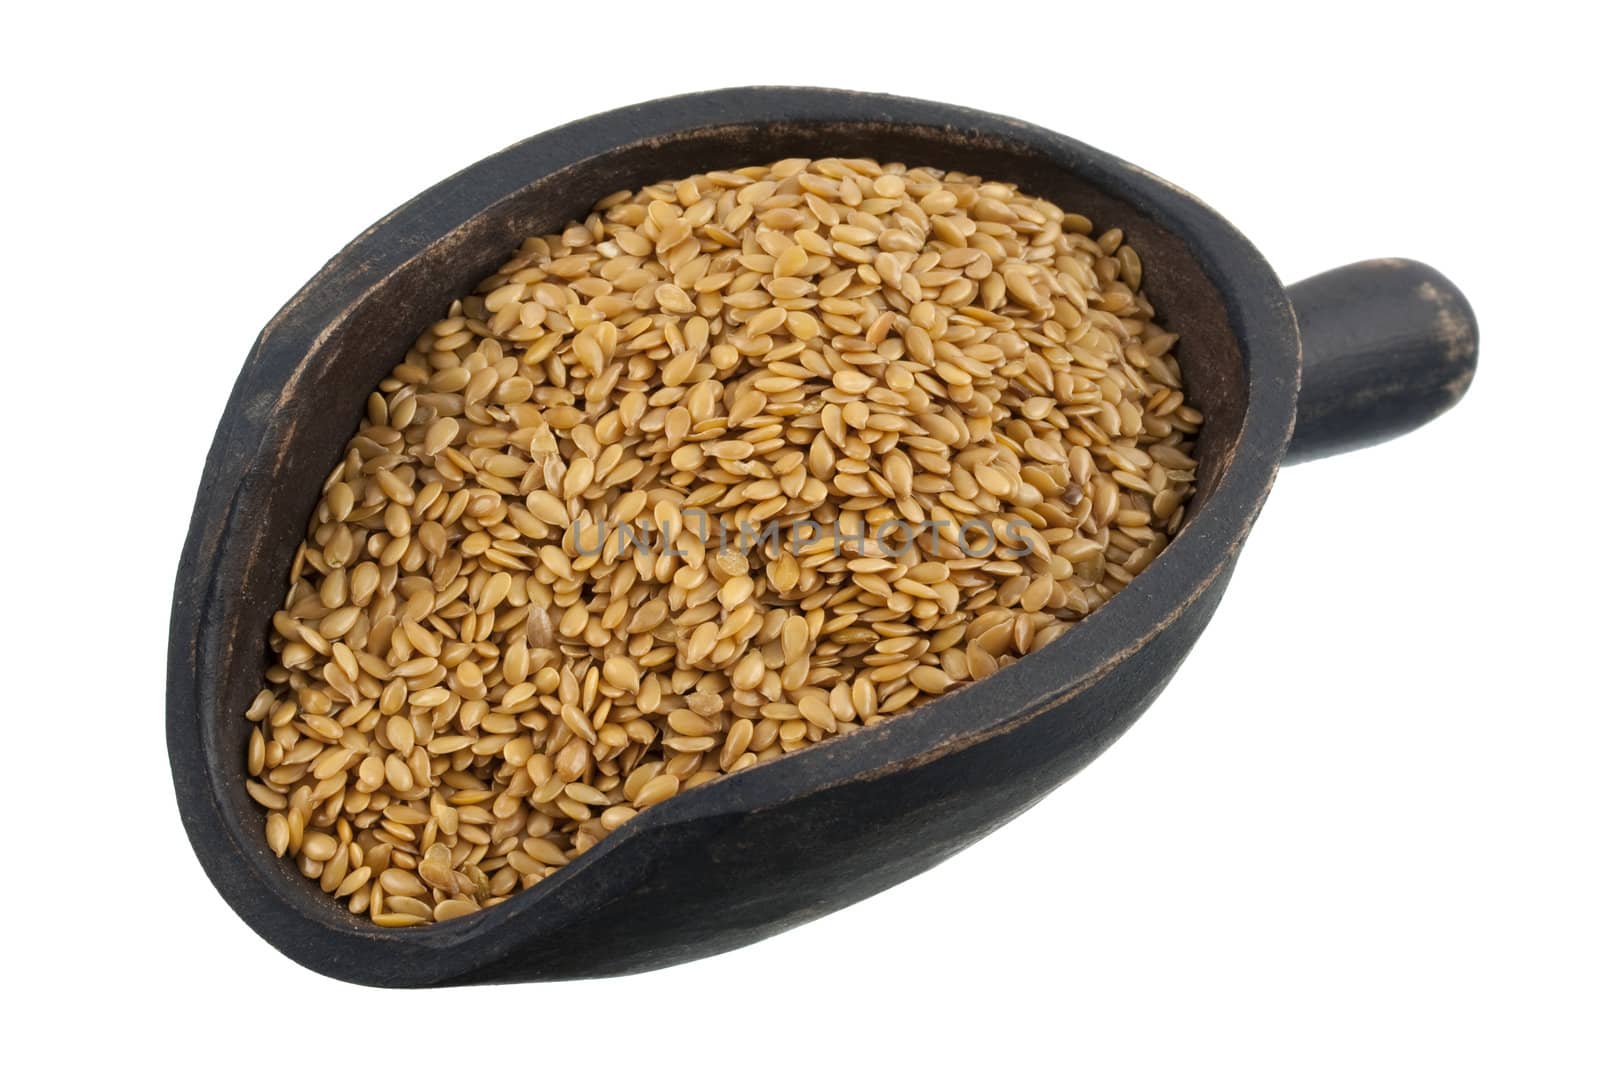 scoop of golden flax seeds by PixelsAway